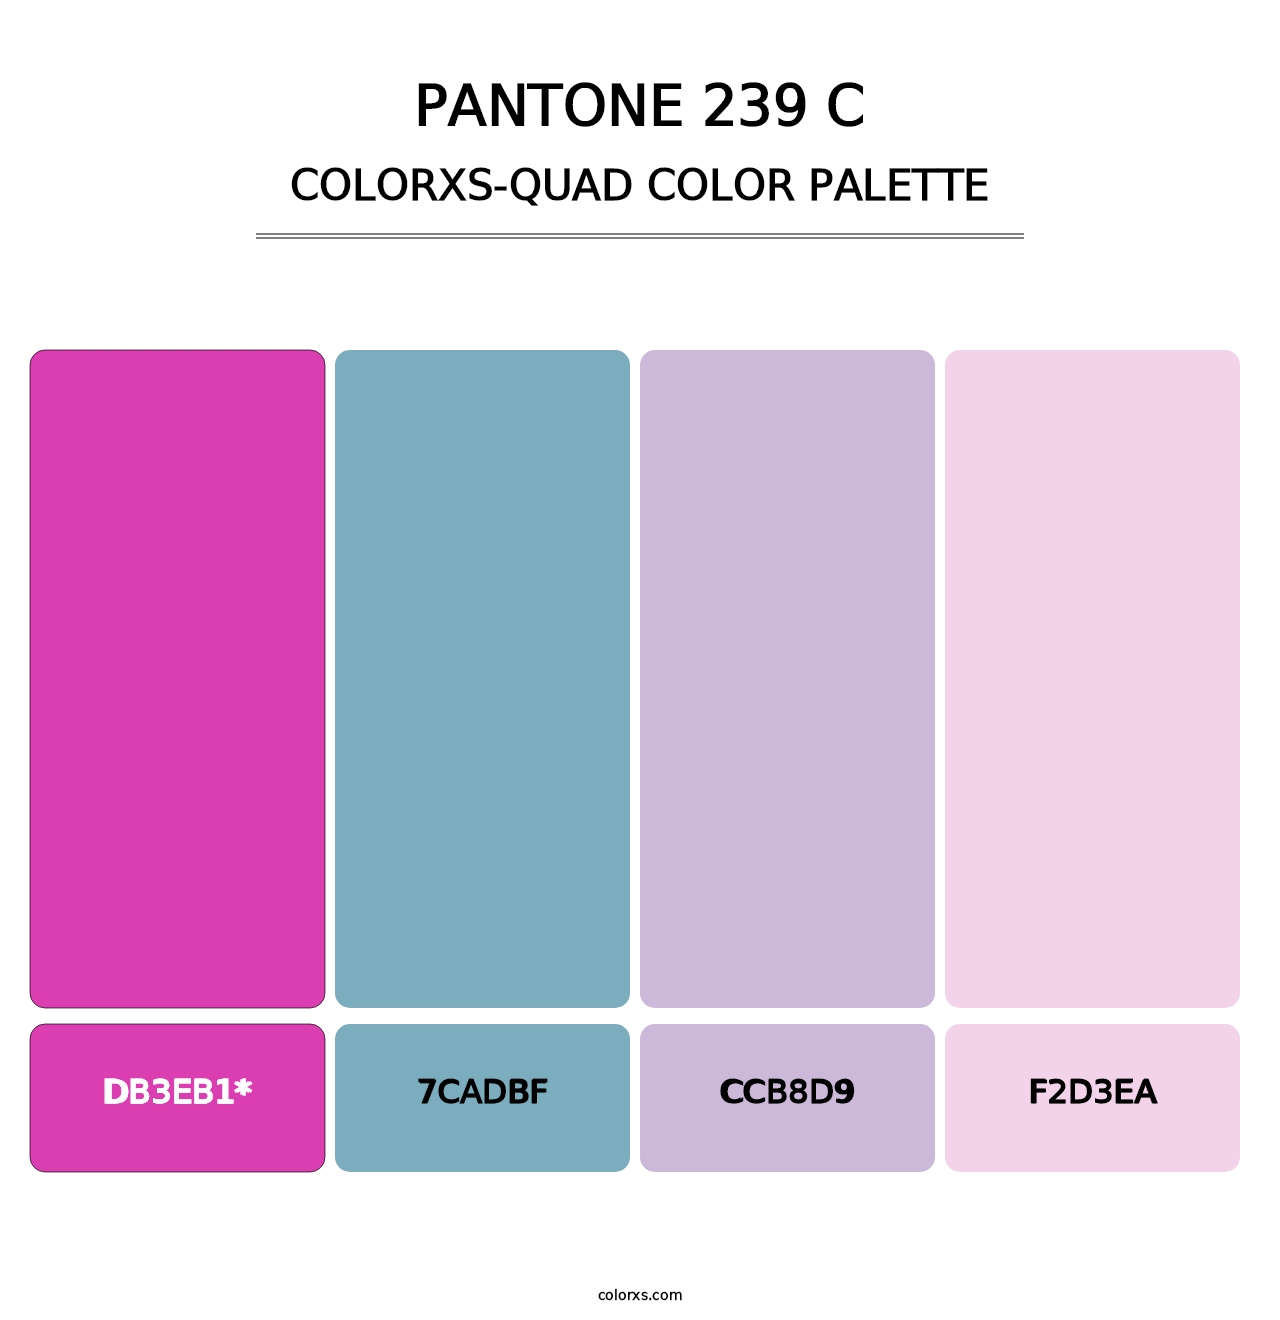 PANTONE 239 C - Colorxs Quad Palette